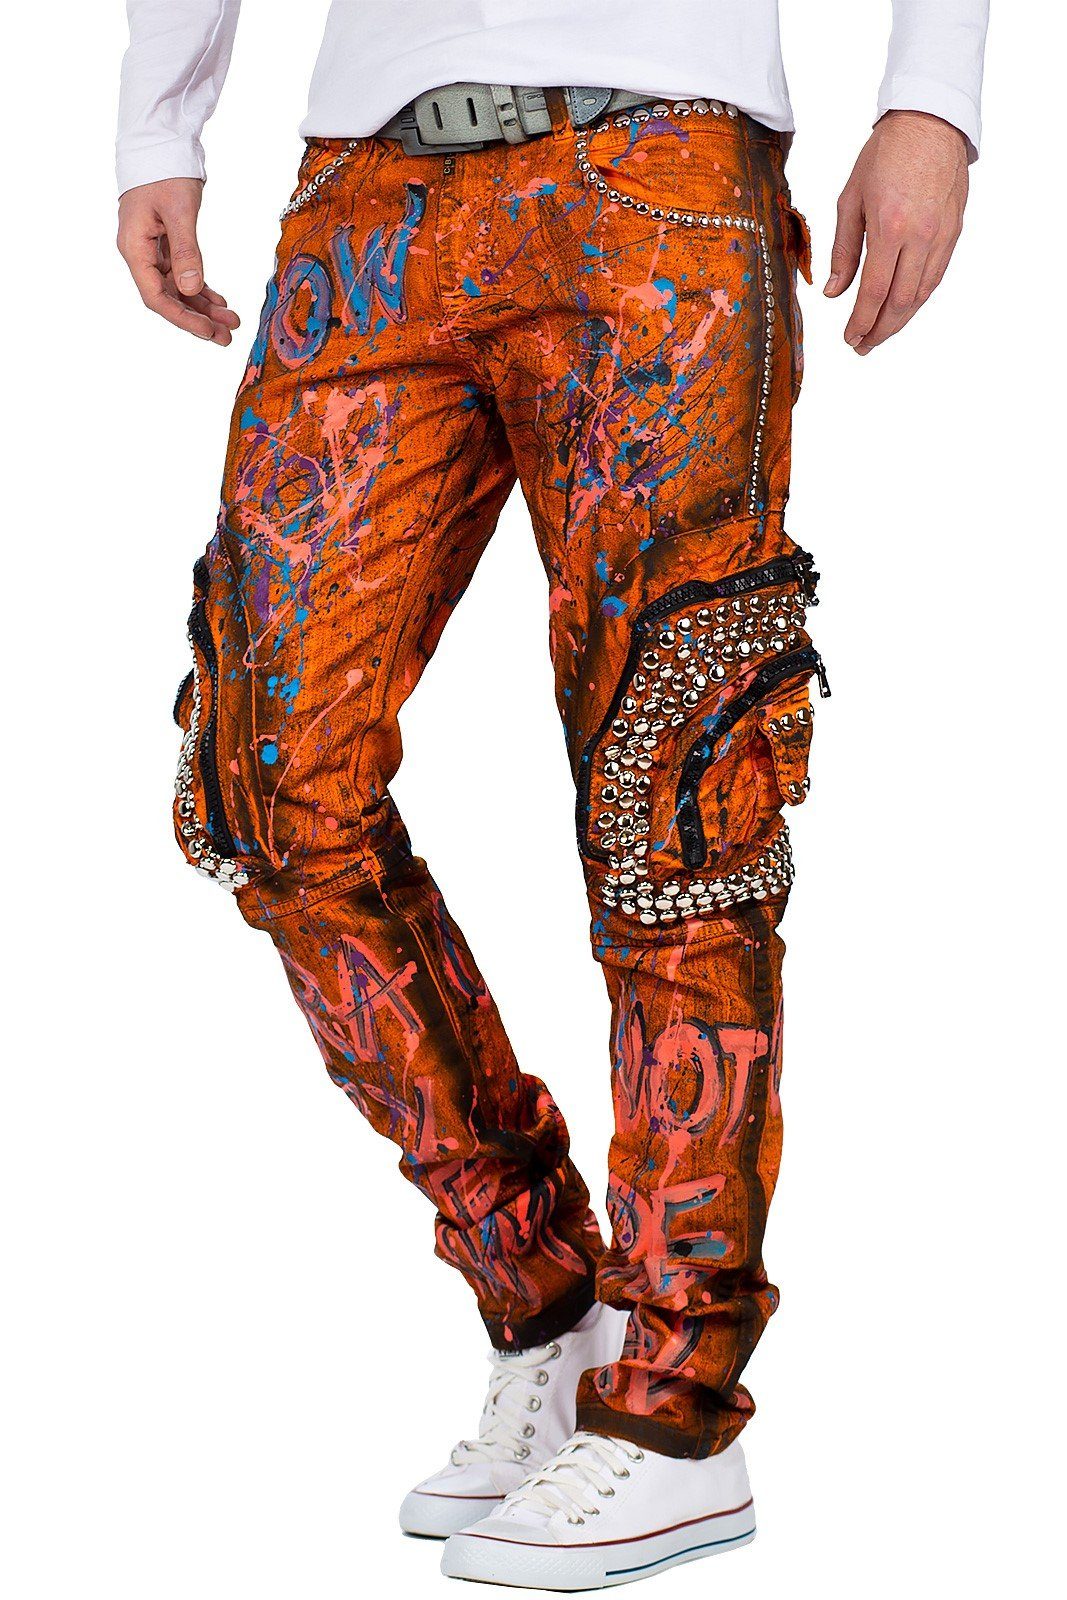 5-Pocket-Jeans Hose mit Baxx Biker Orange Seitentaschen Cipo BA-CD634 & in